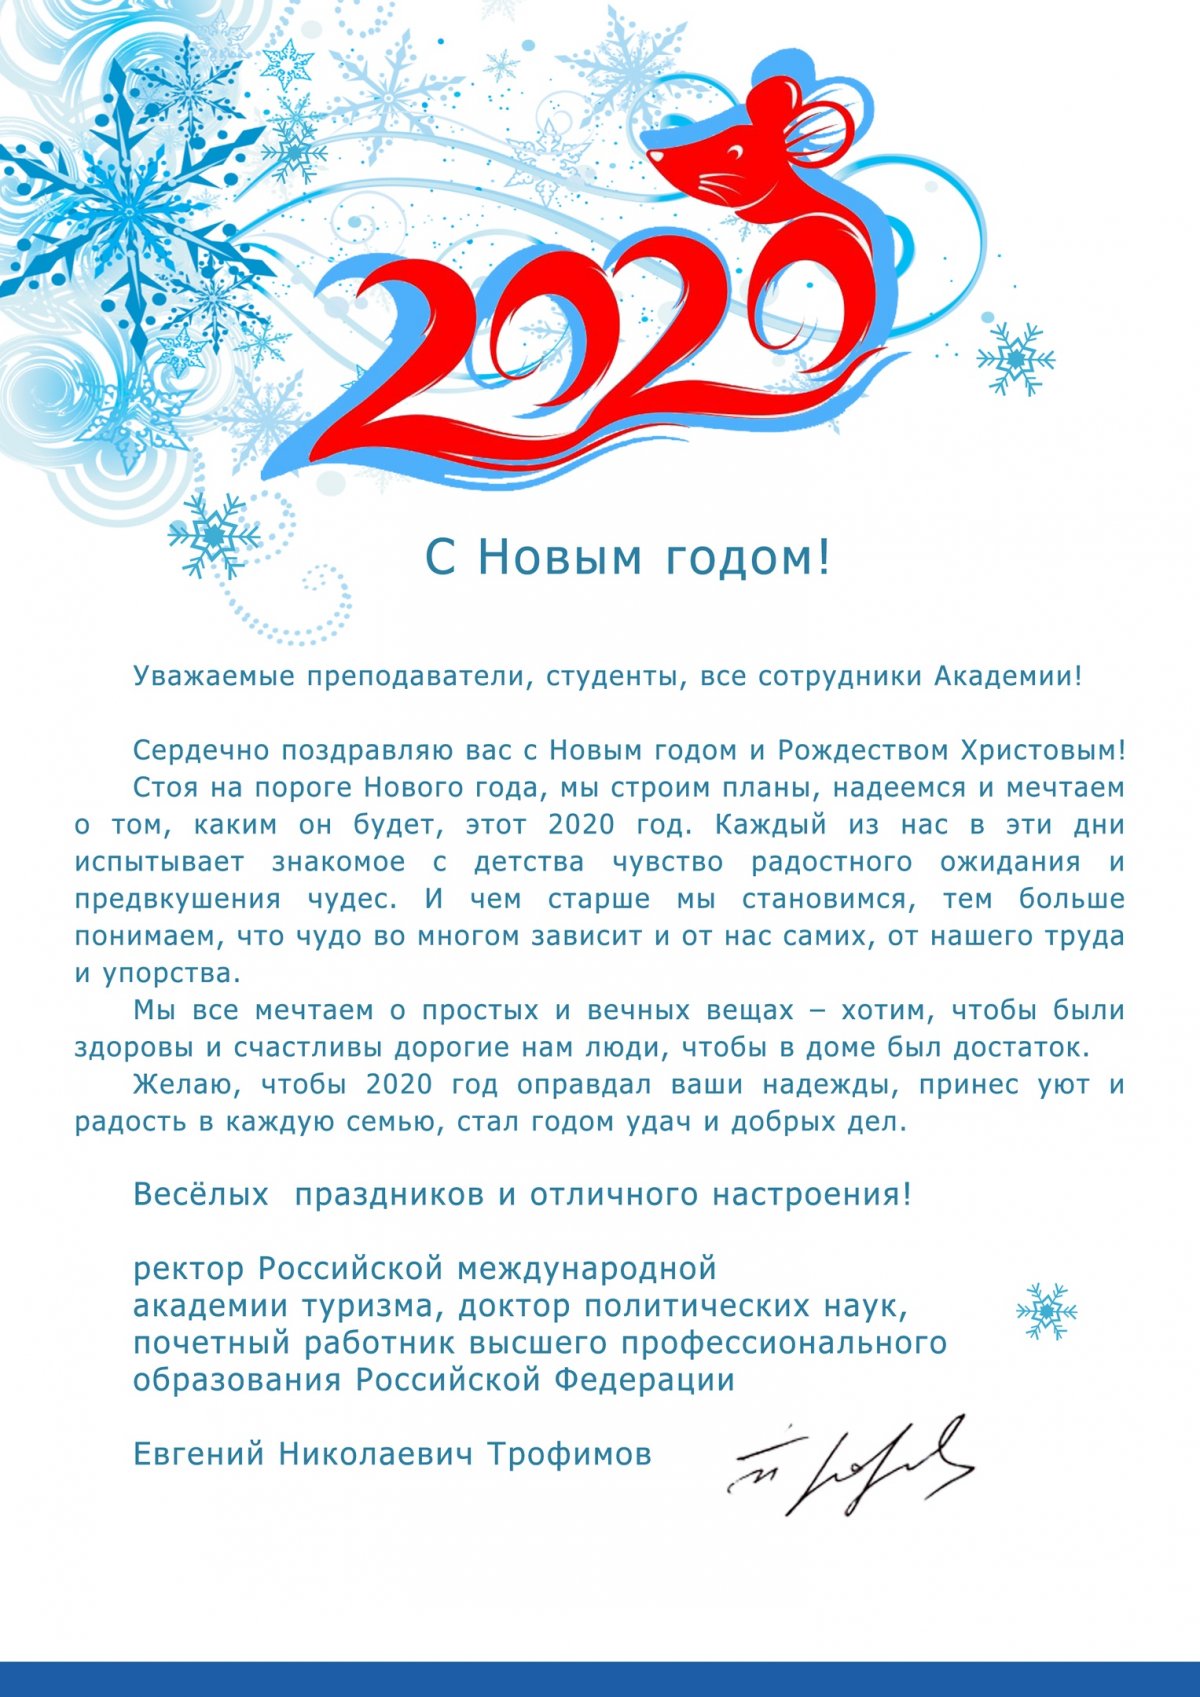 Ректор Е.Н. Трофимов поздравляет с Новым 2020 годом